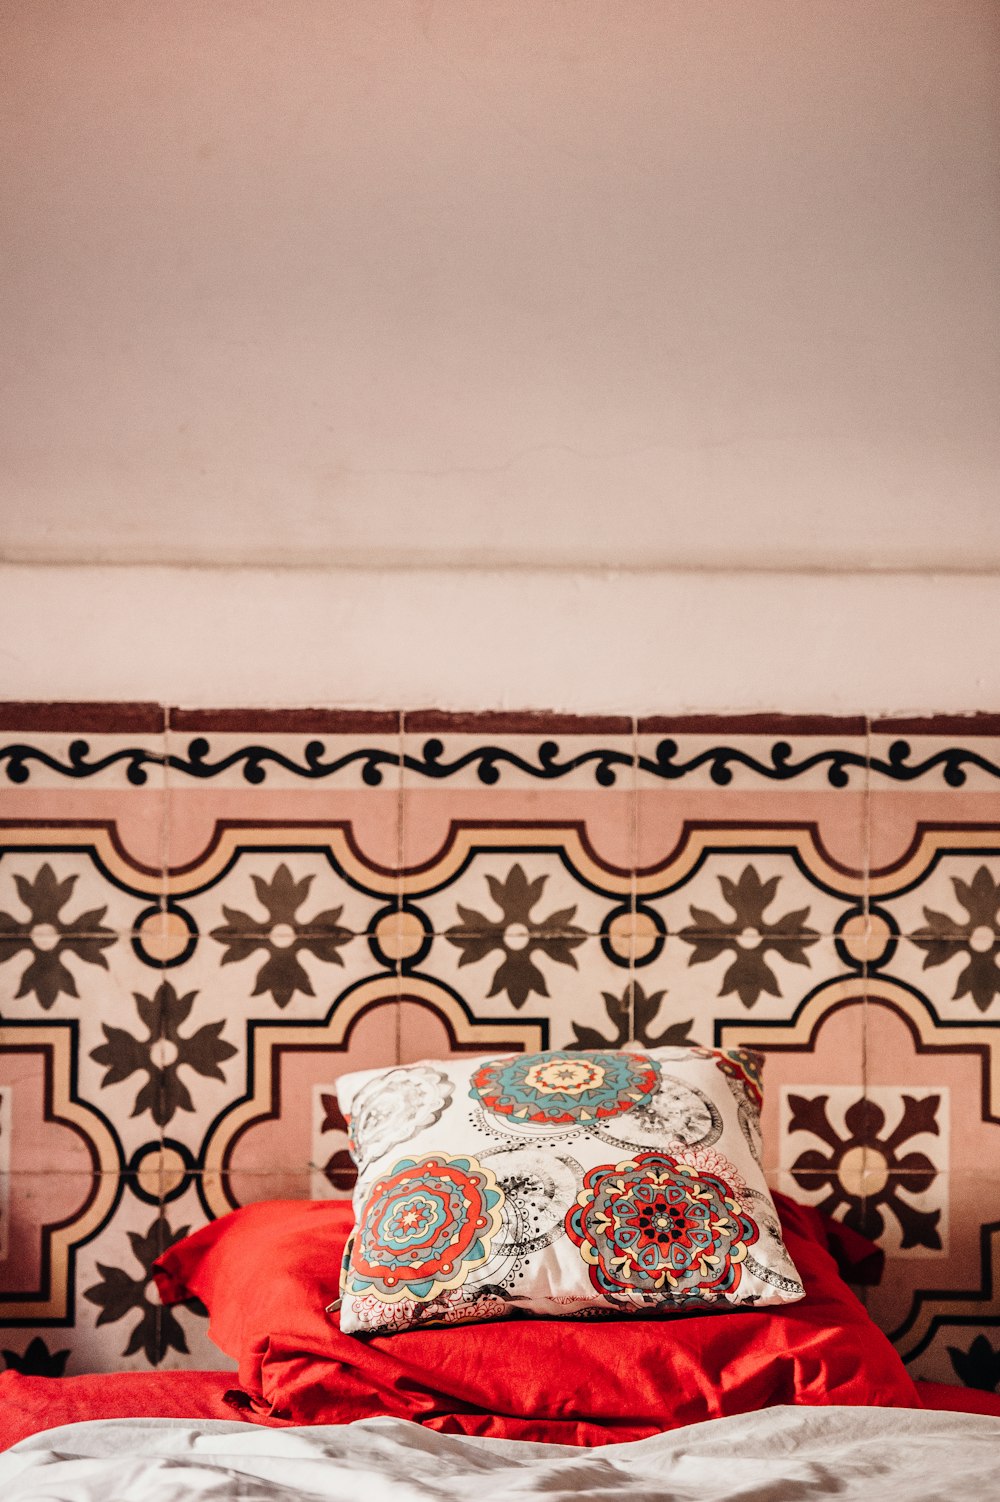 blanc, rouge et bleu mandala floral coussin placé sur taie d’oreiller rouge